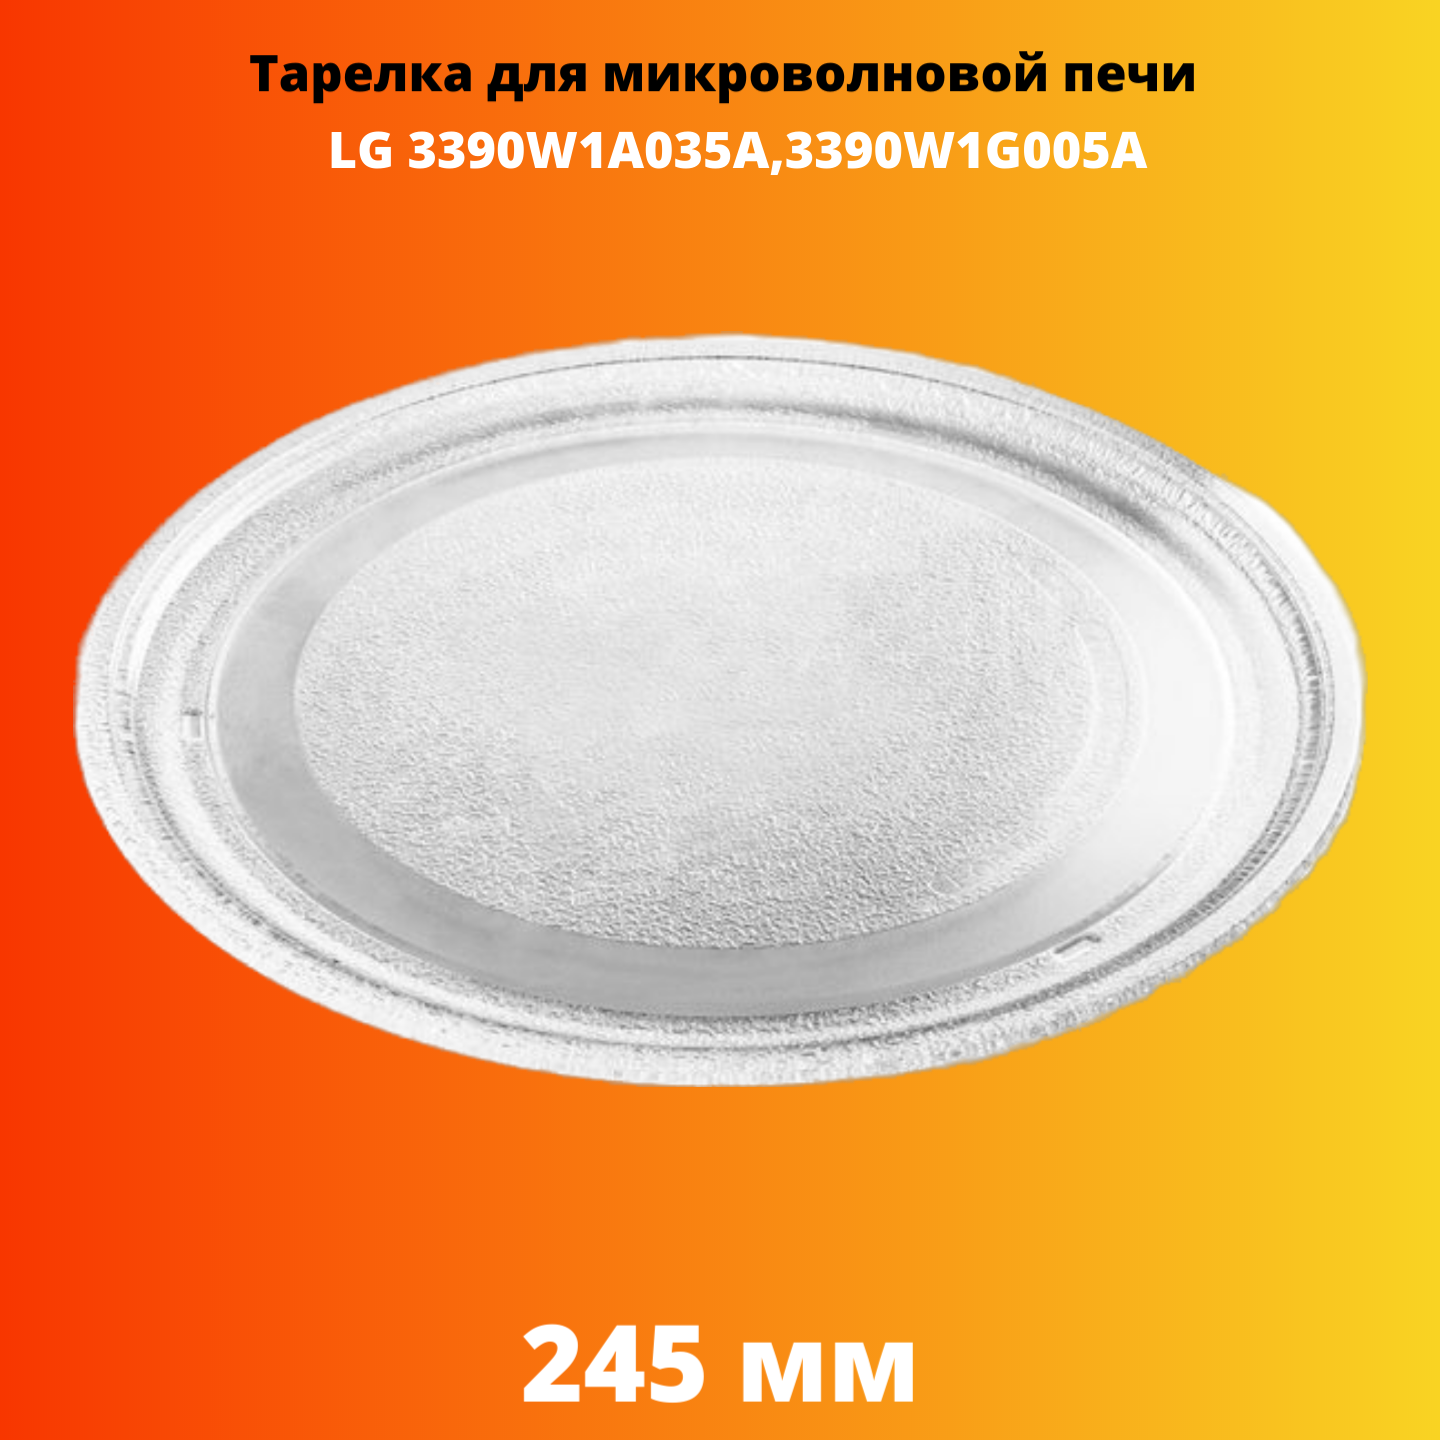 Тарелка для микроволновой печи Electriclight 3390W1A035A блюдо стеклянное sultana 23×18 см прозрачный